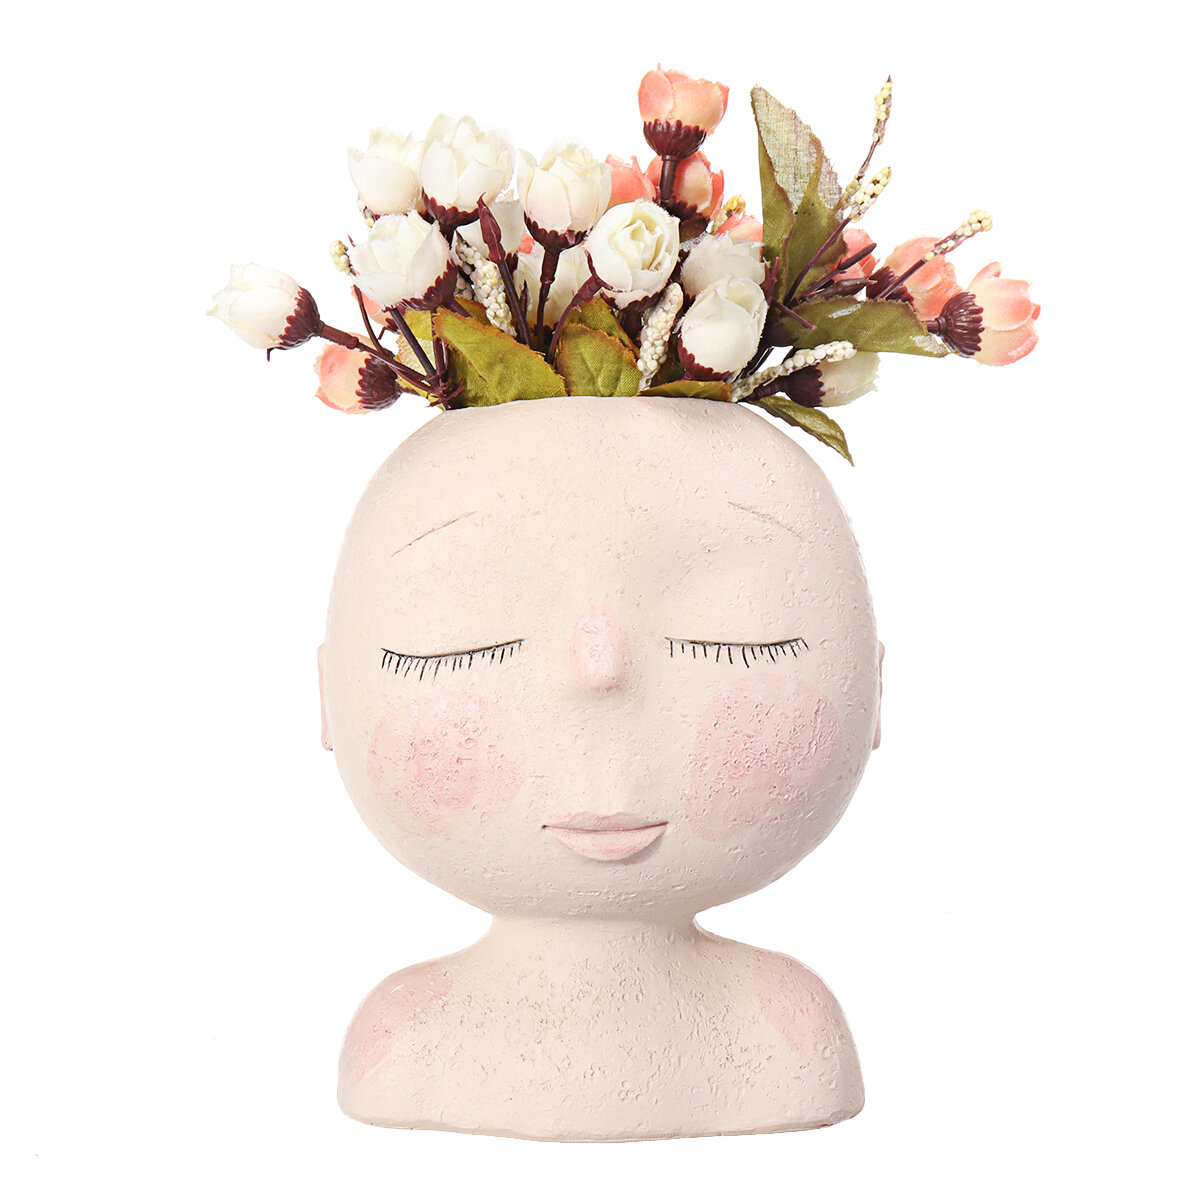 Nordic Doll Shaped Flower Pot Sculpture Flower Pot Art Vase Home Decor Succulents Head Shaped Vase Ornament